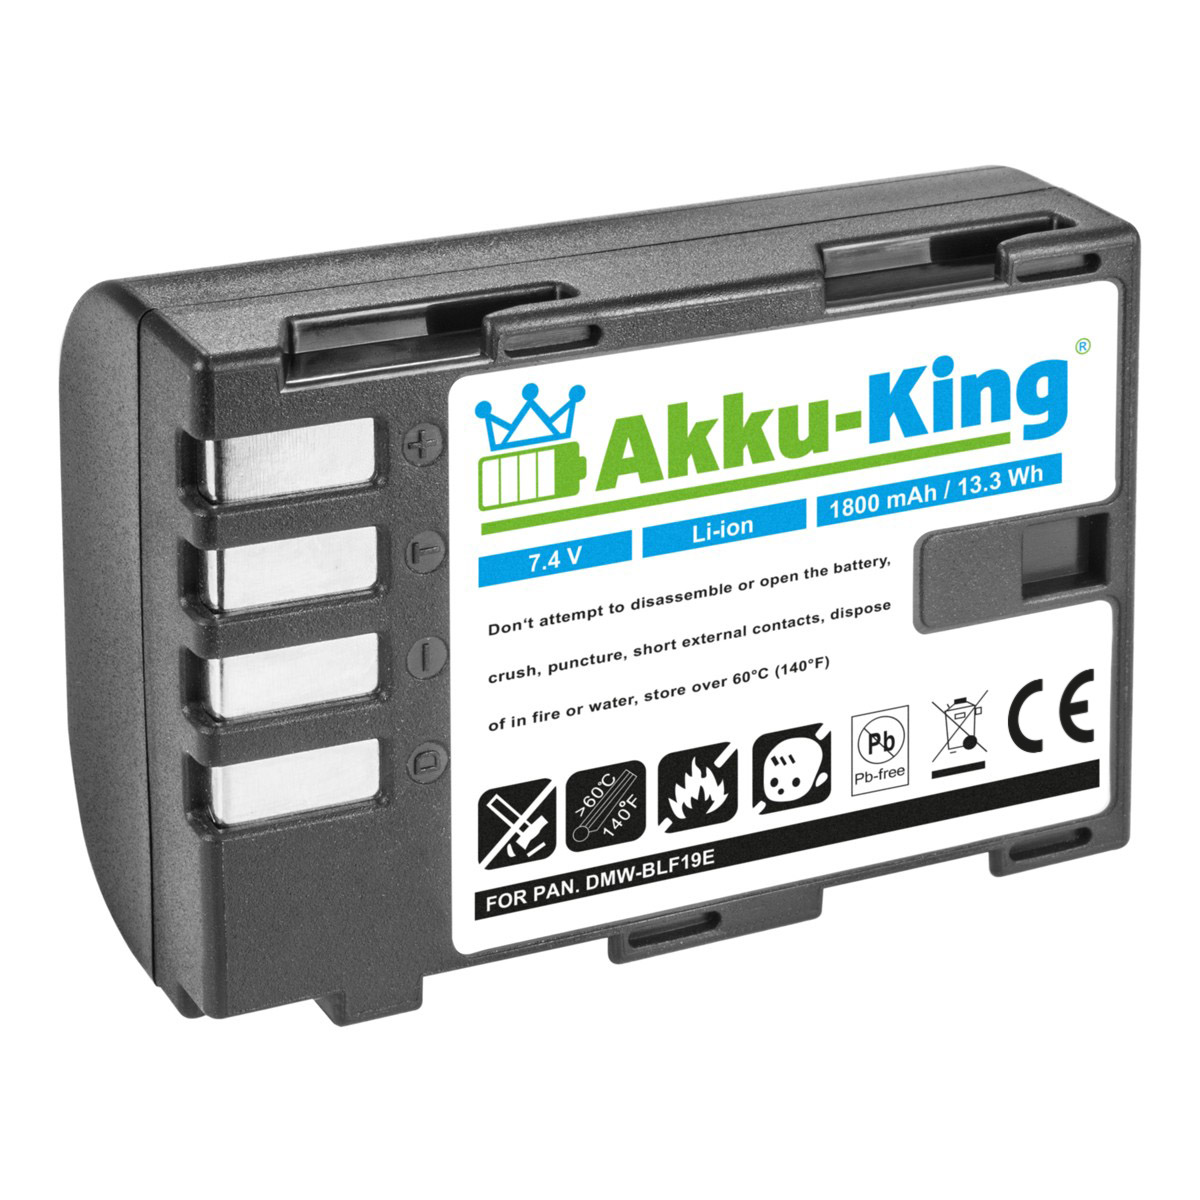 7.4 Akku AKKU-KING Kamera-Akku, DMW-BLF19 Li-Ion mit Panasonic 1800mAh Volt, kompatibel